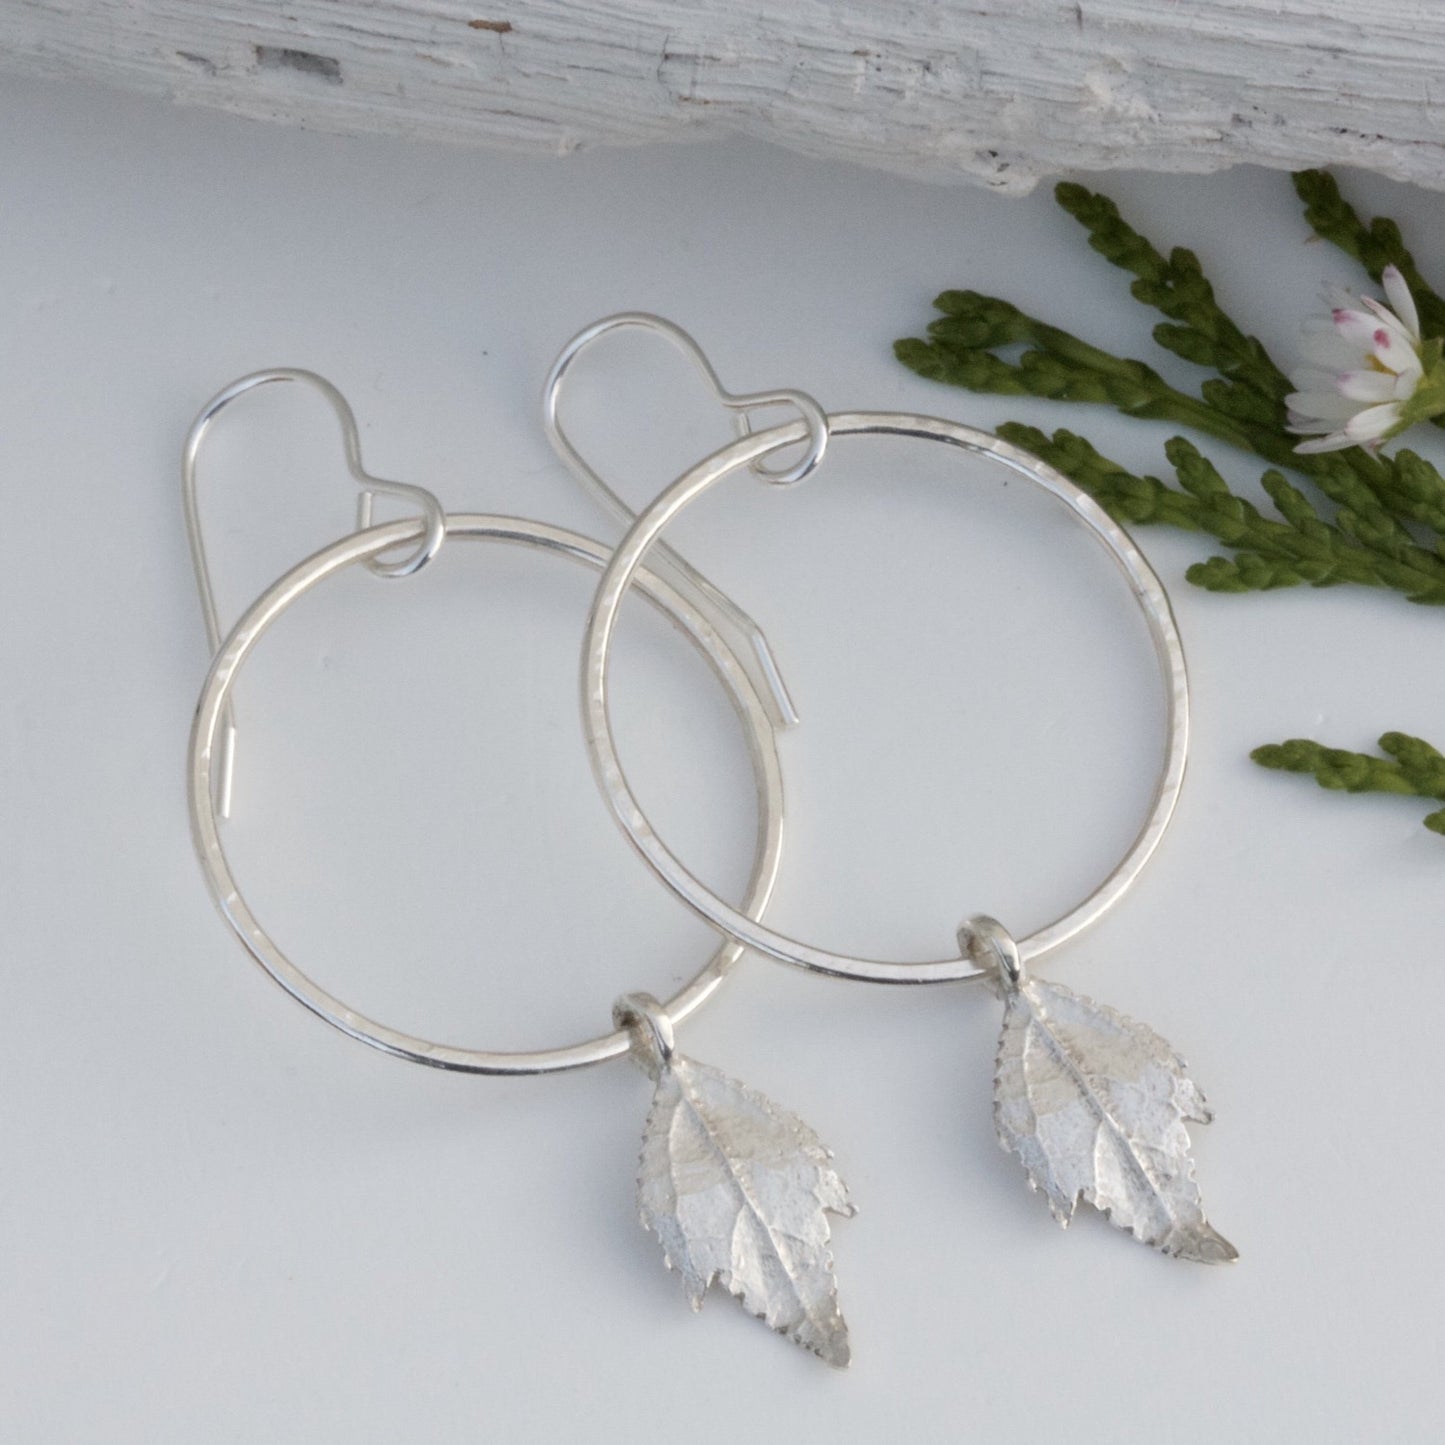 Silver Boho Hoop Earrings With Silver Leaves